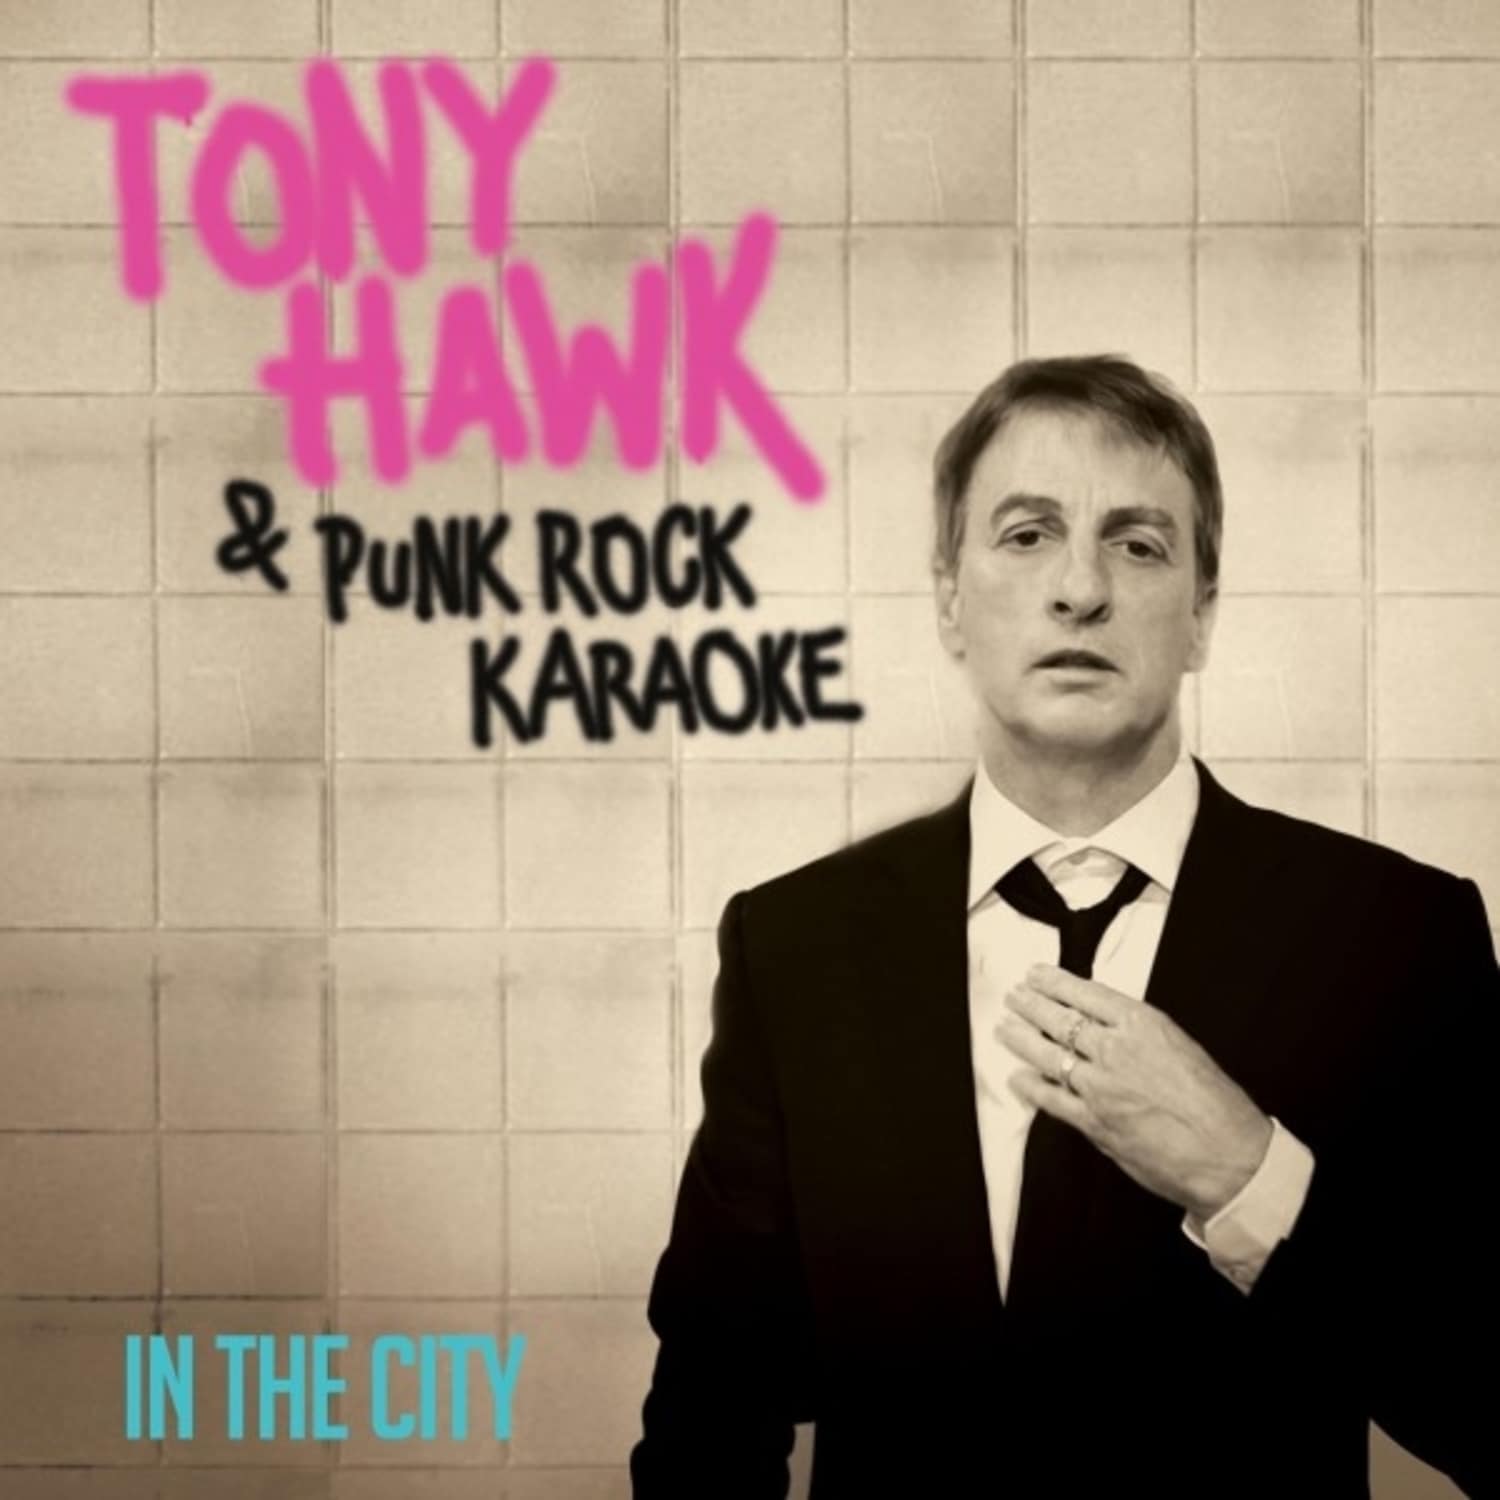 Tony Hawk & Punk Rock Karaoke - IN THE CITY RED 